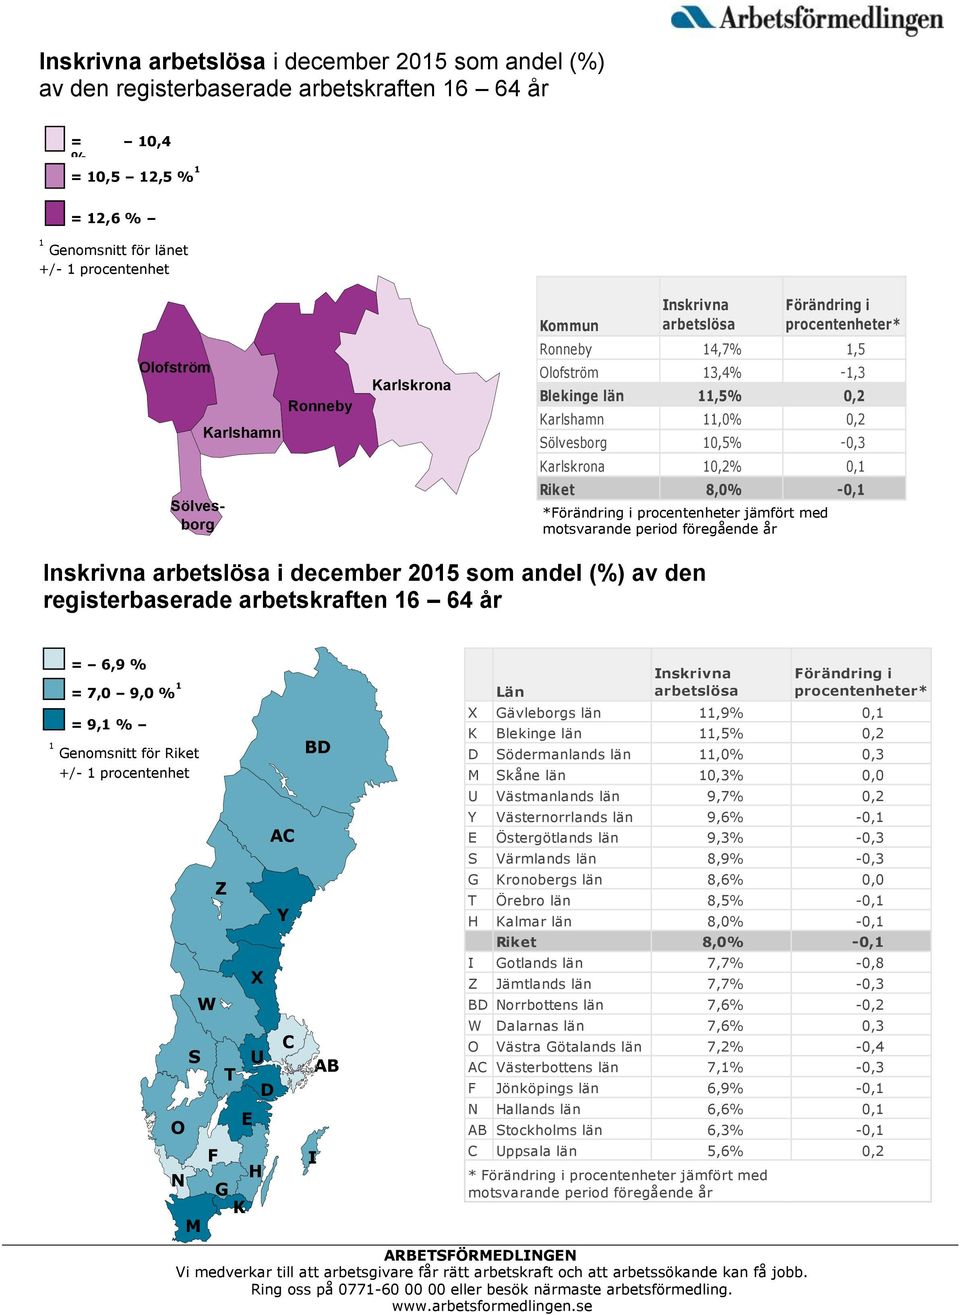 Blekinge län 11,5% 0,2 Karlshamn 11,0% 0,2 Sölvesborg 10,5% -0,3 Karlskrona 10,2% 0,1 Riket 8,0% -0,1 Inskrivna arbetslösa i december 2015 som andel (%) av den registerbaserade arbetskraften 16 64 år